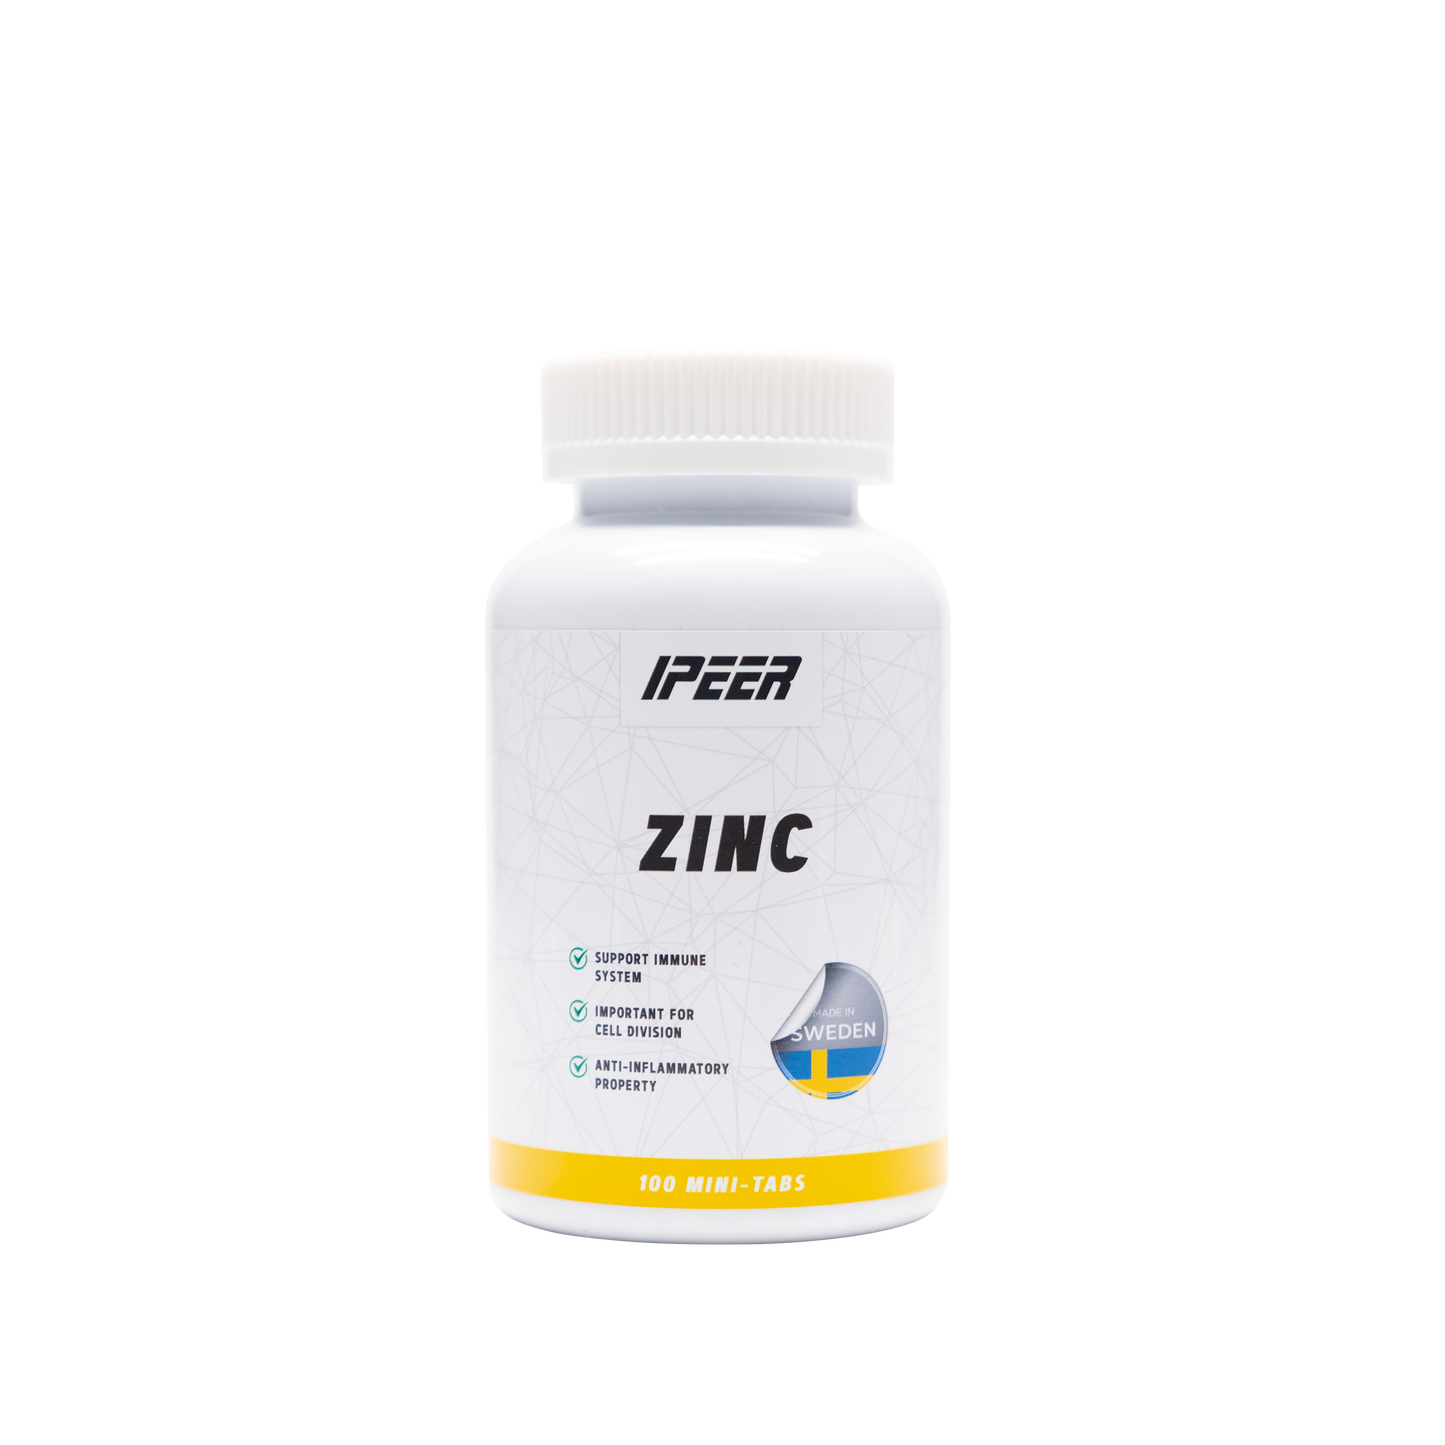 zinc